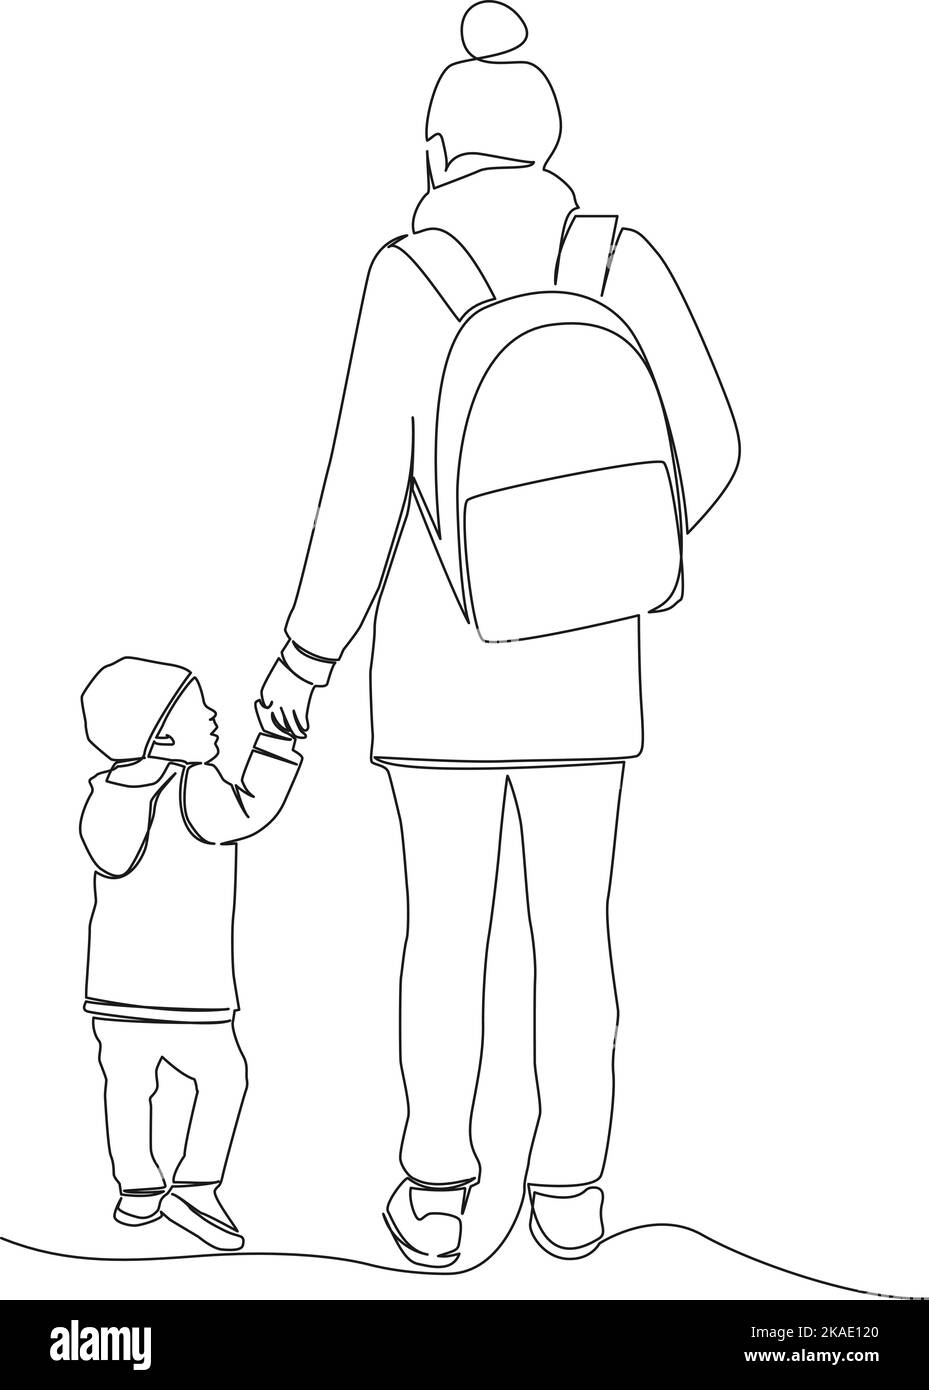 Rückansicht einzeilige Zeichnung von Mutter und Kleinkind, die Hand in Hand gehen, fortlaufende Vektorgrafik Stock Vektor